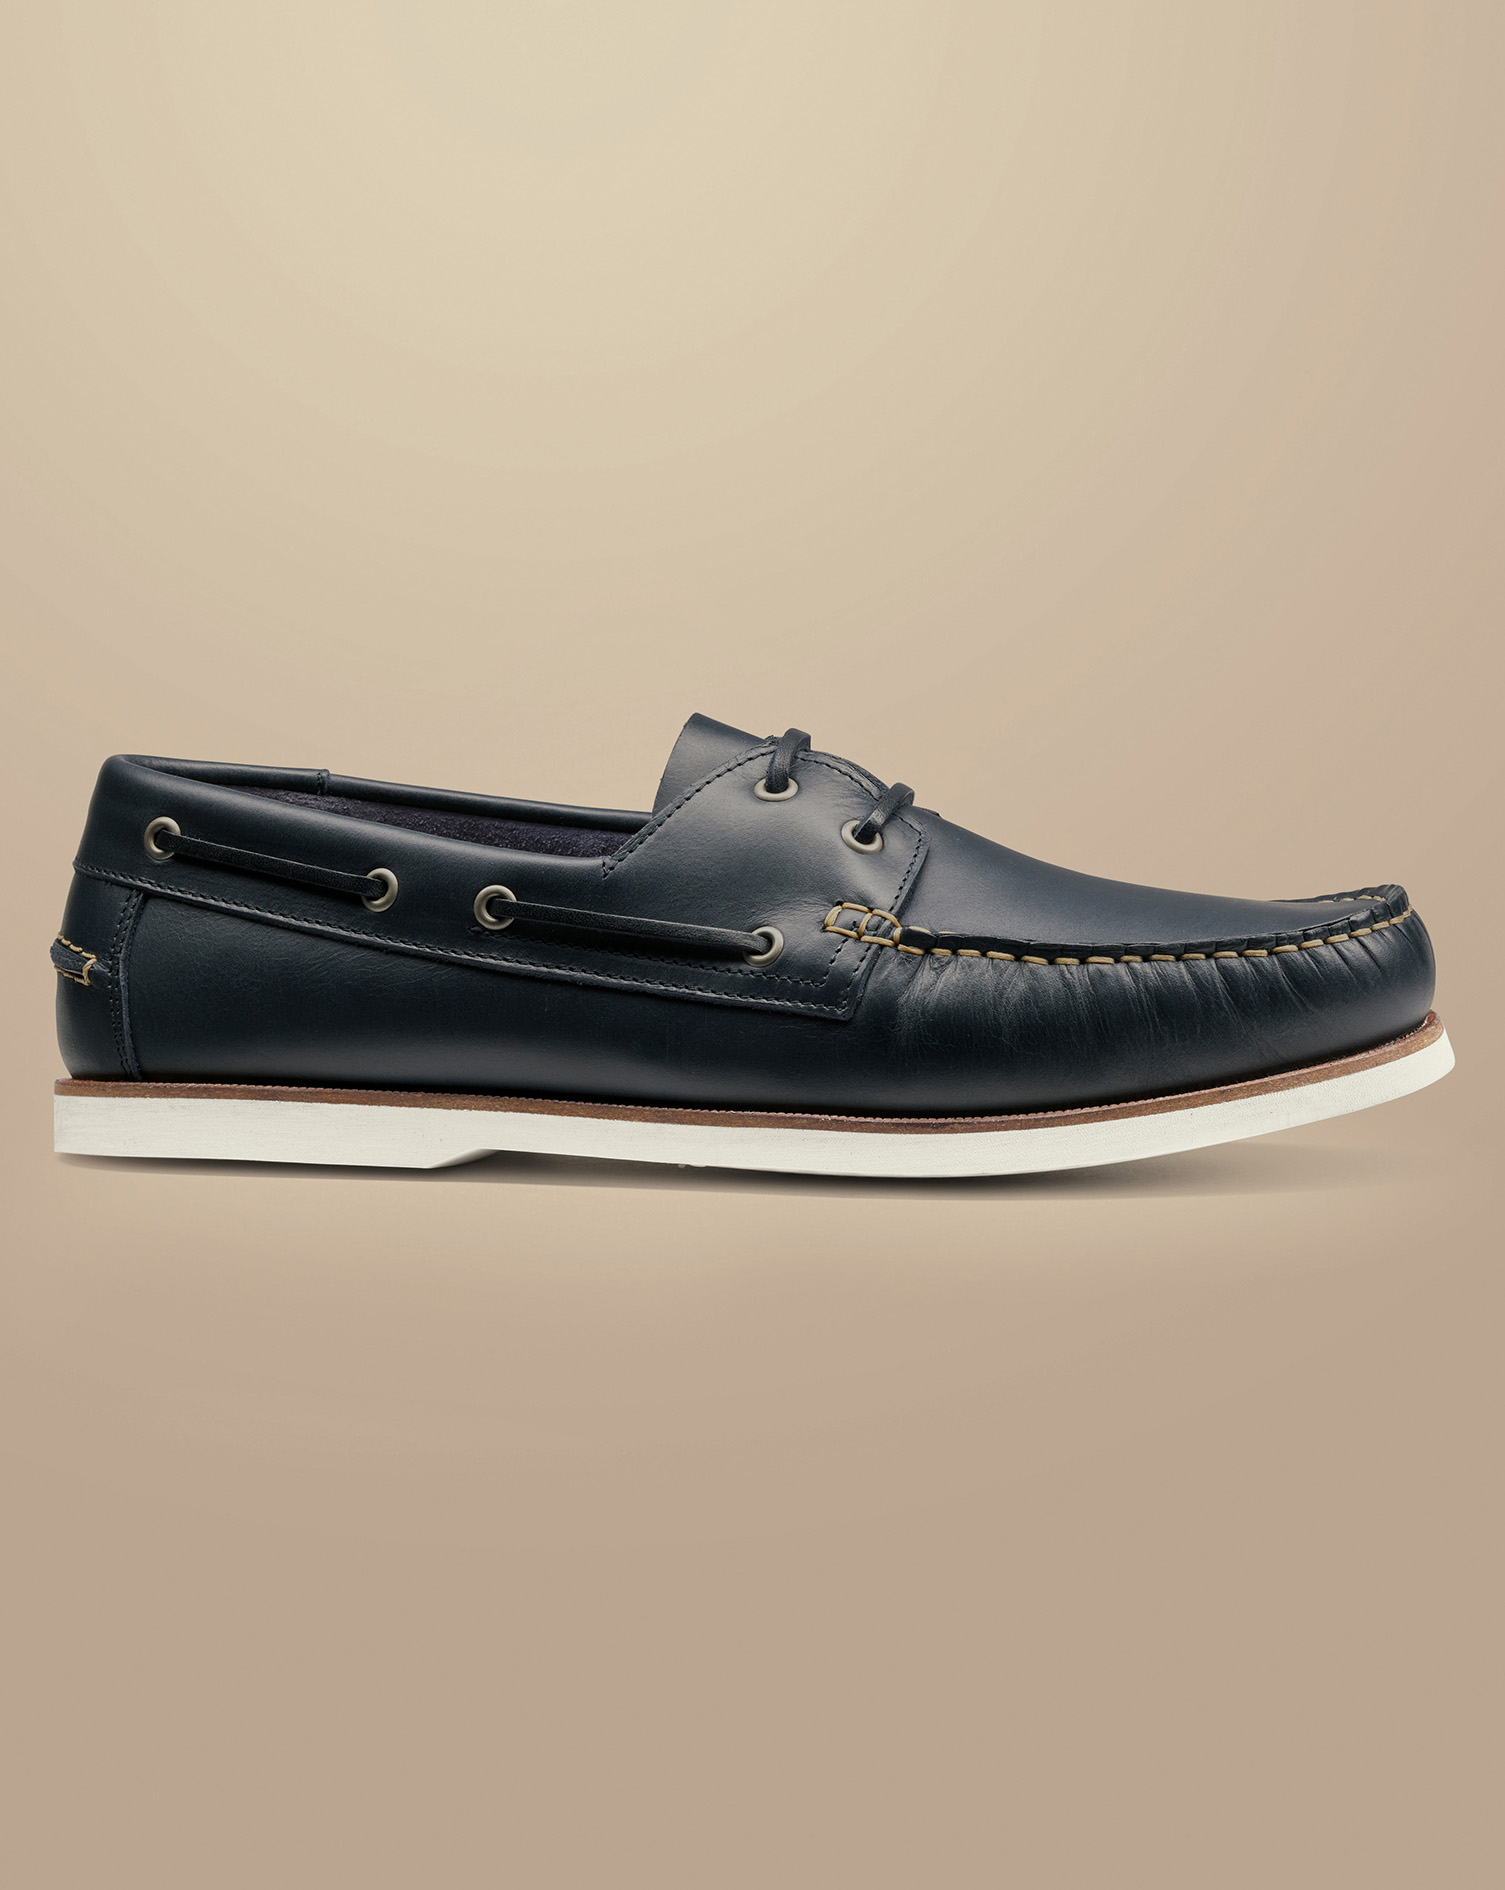 Men's Charles Tyrwhitt Leather Boat Shoe - Dark Navy Blue Size 9
